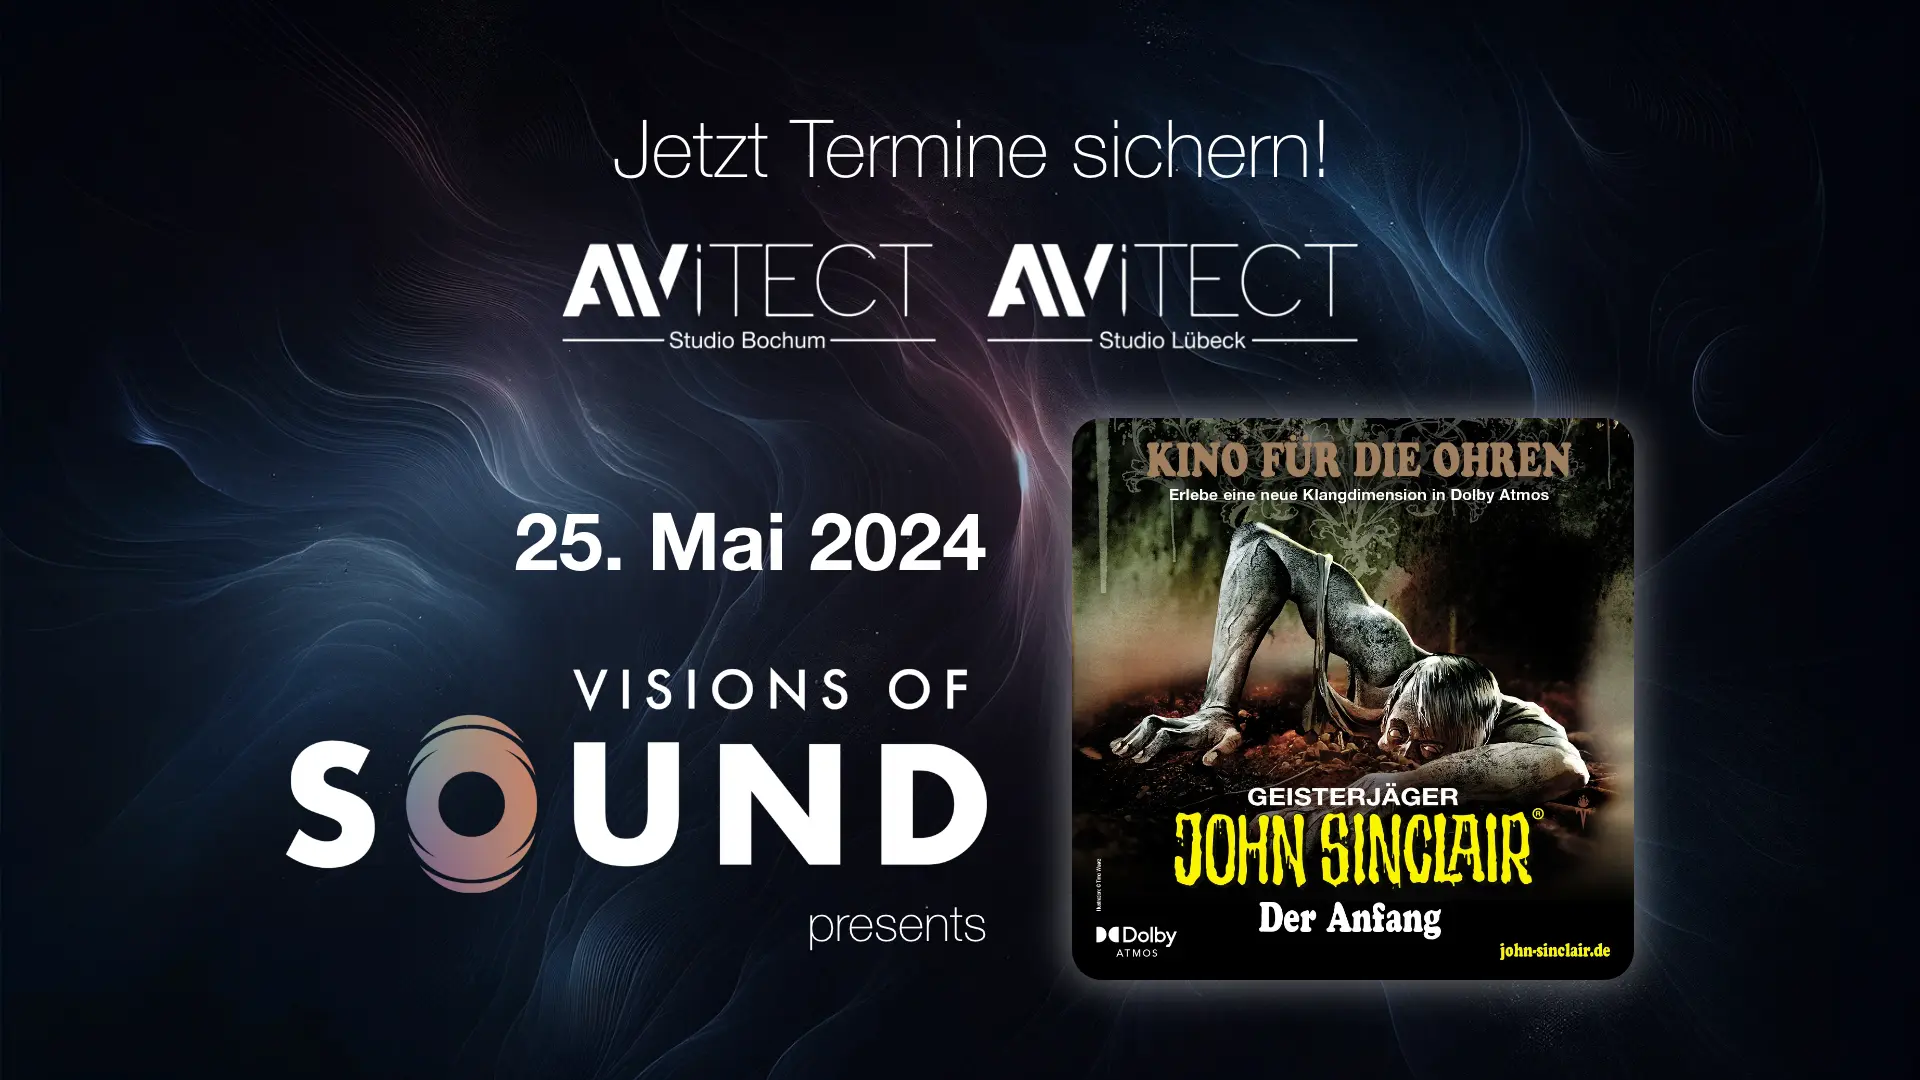 Einladung zum kostenlosen Visions of Sound Event in den AVITECT Studios Bochum und Lübeck mit John Sinclair Special